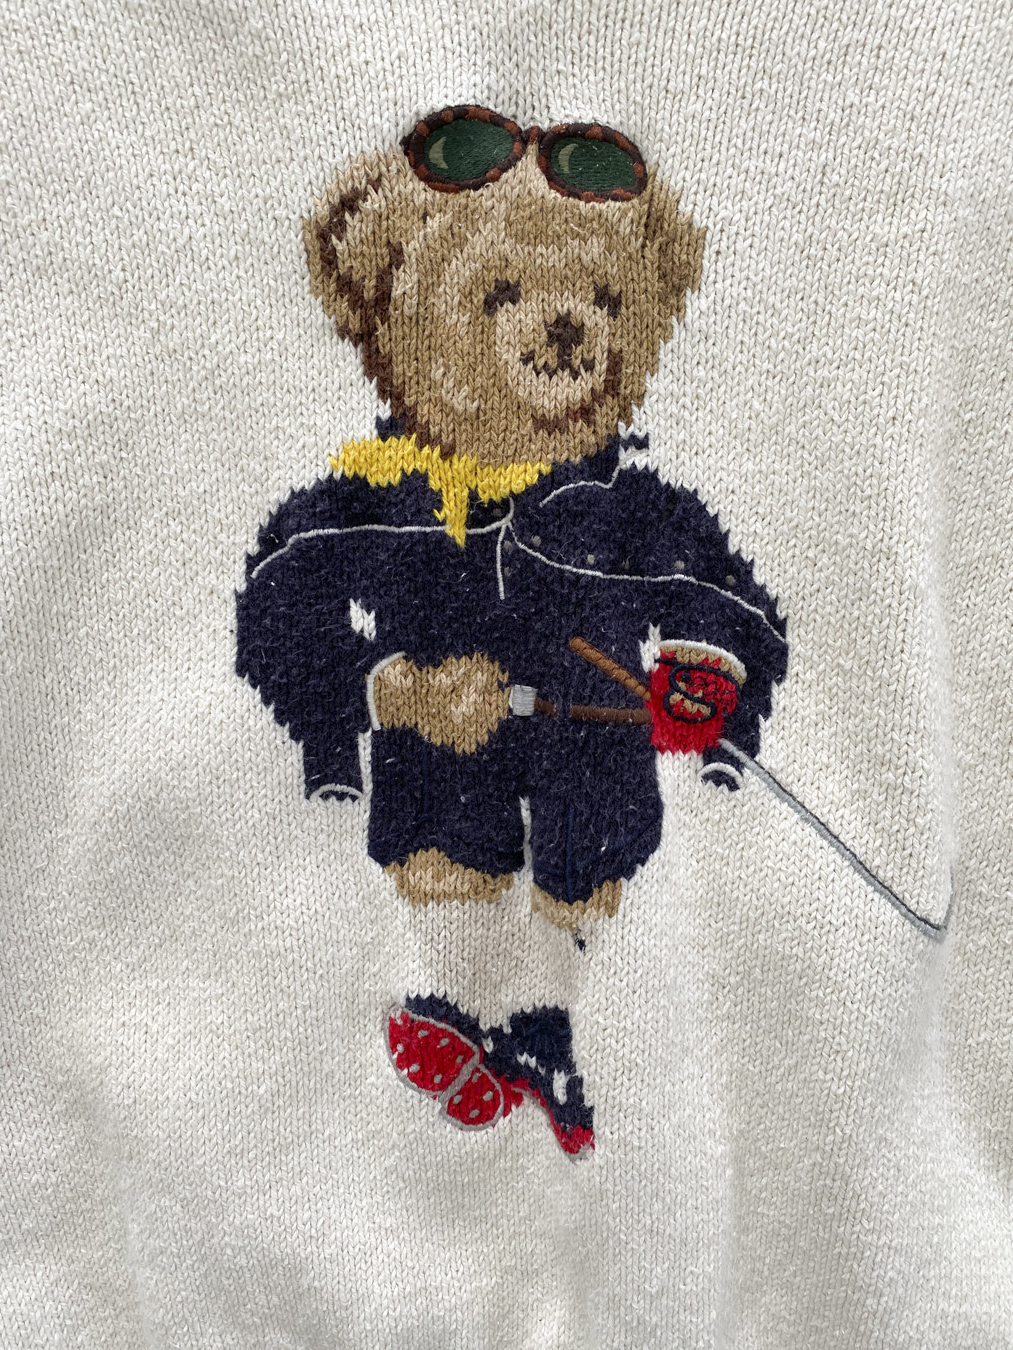 Ralph Lauren Teddy Bear Sweater